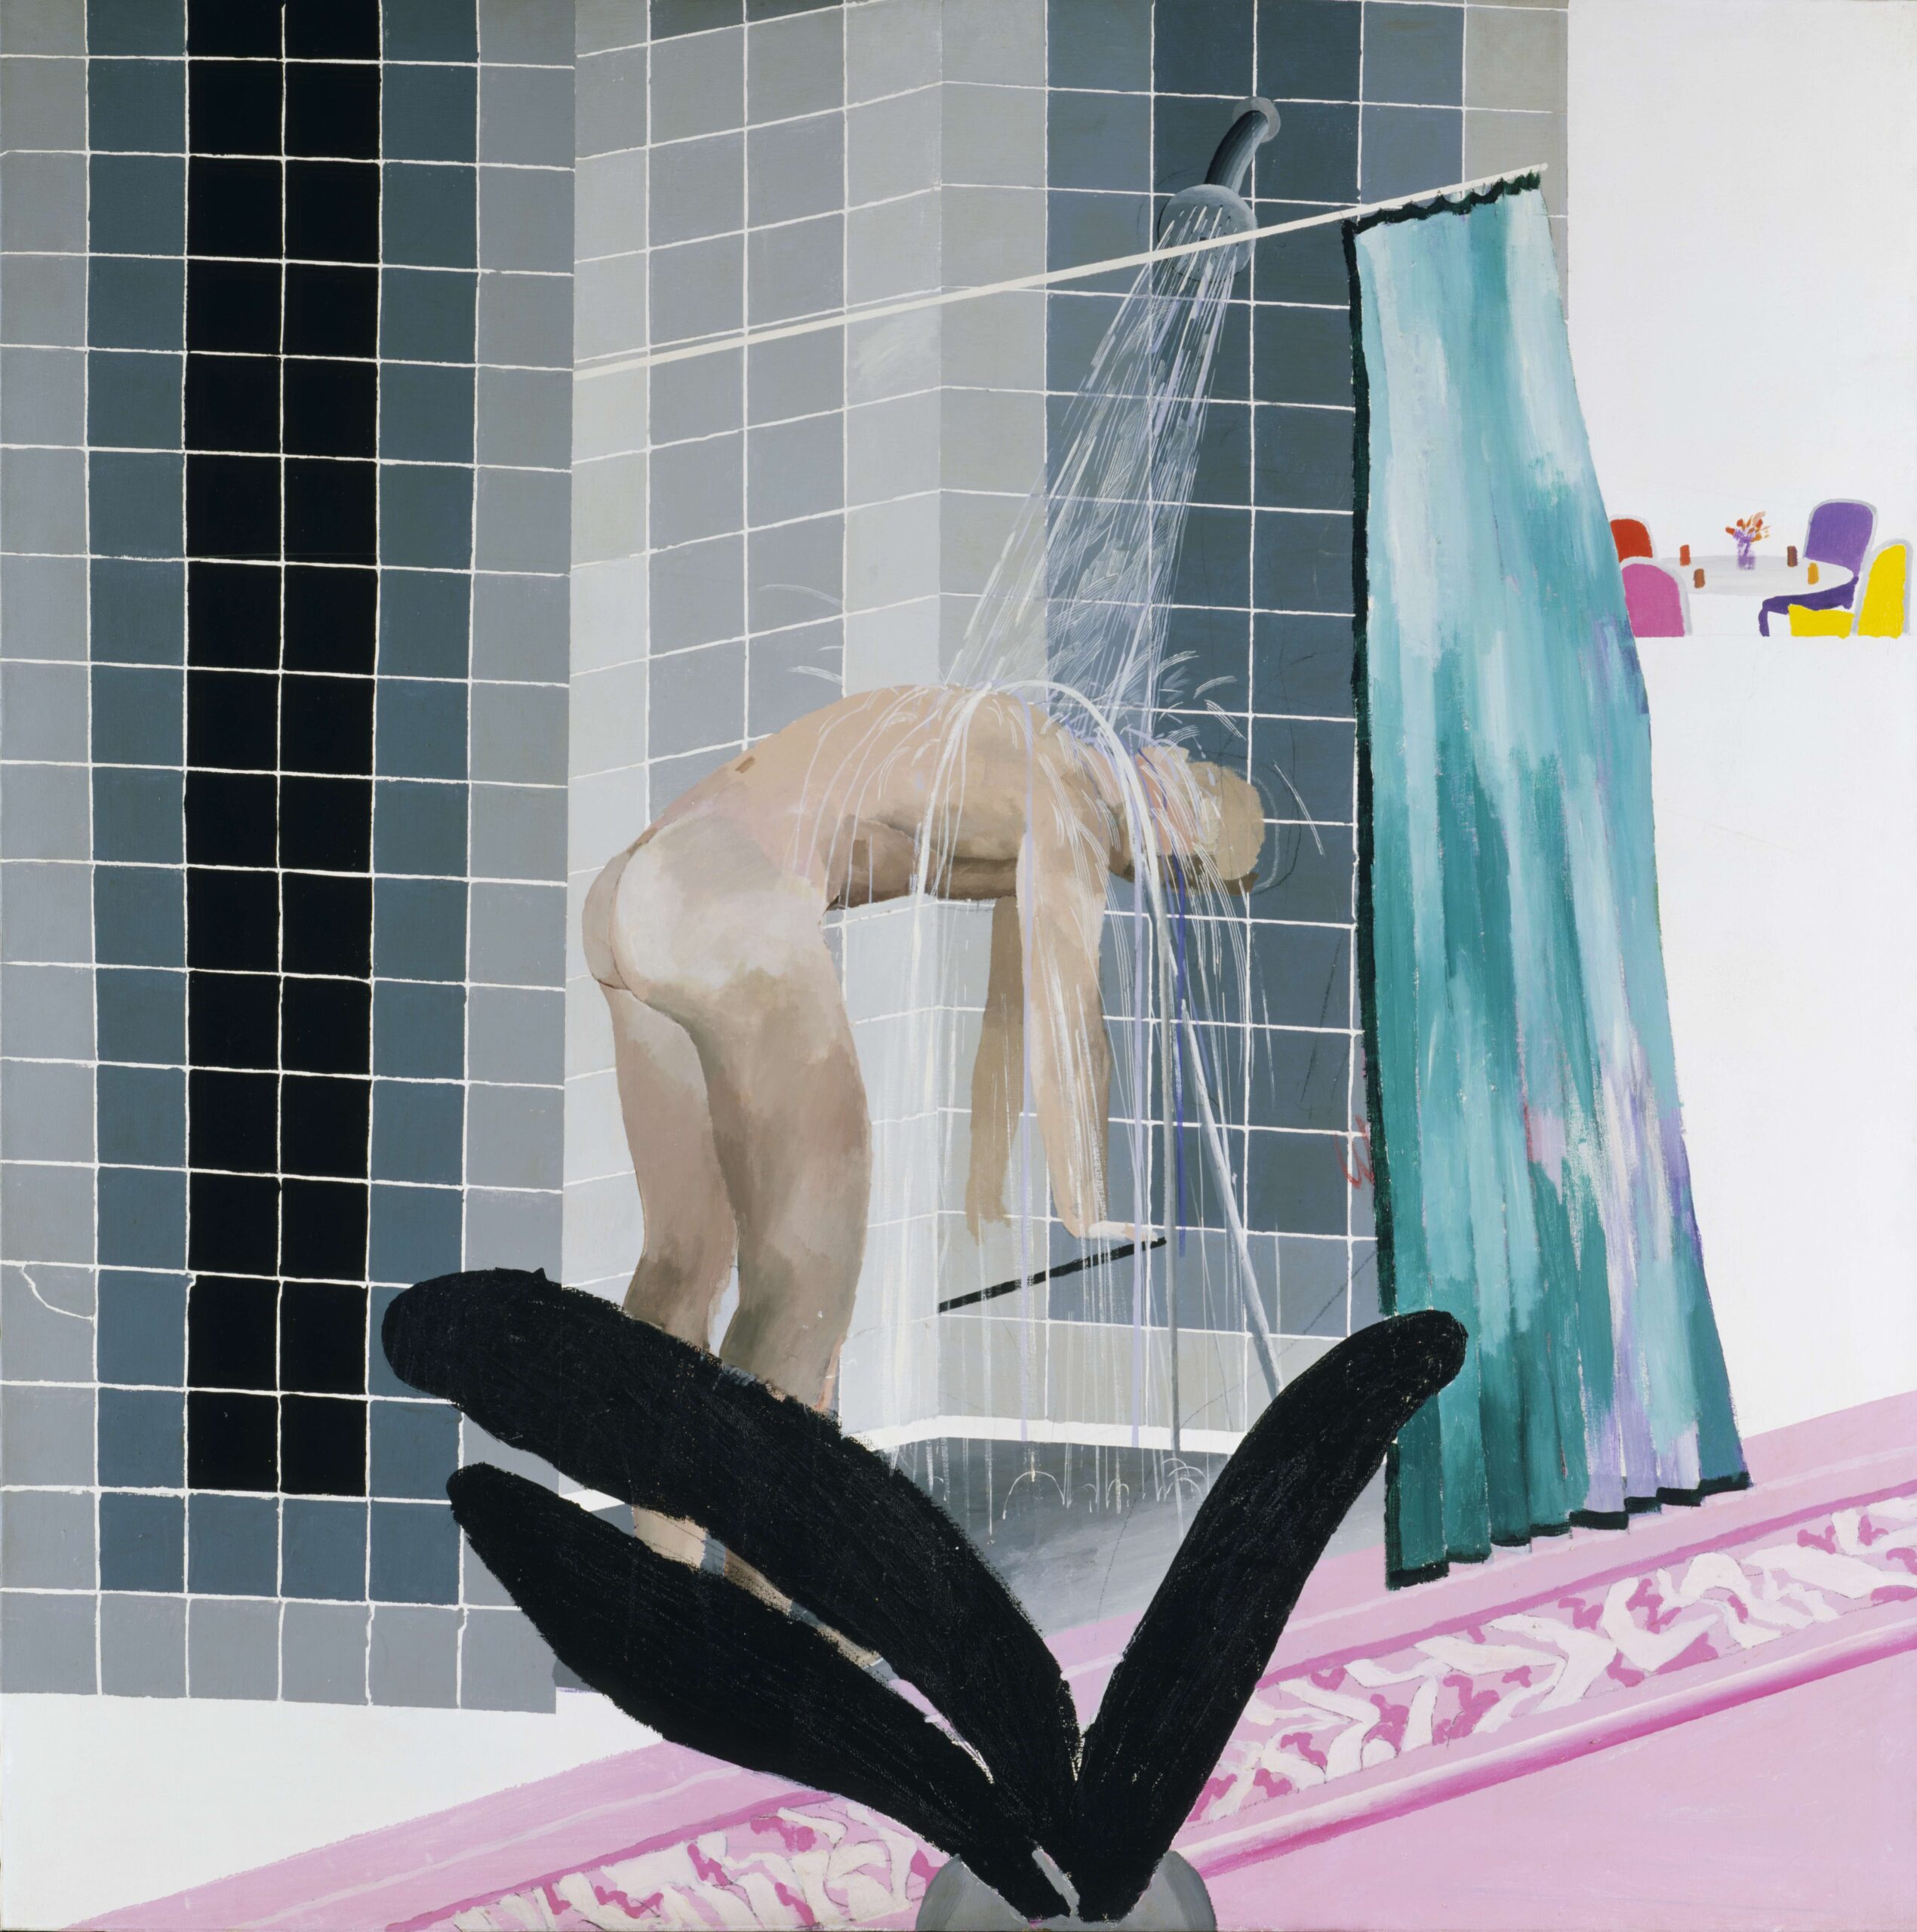 David Hockney (né en 1937), Man in Shower in Beverley Hills [Homme prenant une douche à Beverley Hills], 1964. Acrylique sur toile, 167,3 x 167 cm. Londres, Tate, acquis en 1980. Photo service de presse. © David Hockney / Photo : Tate